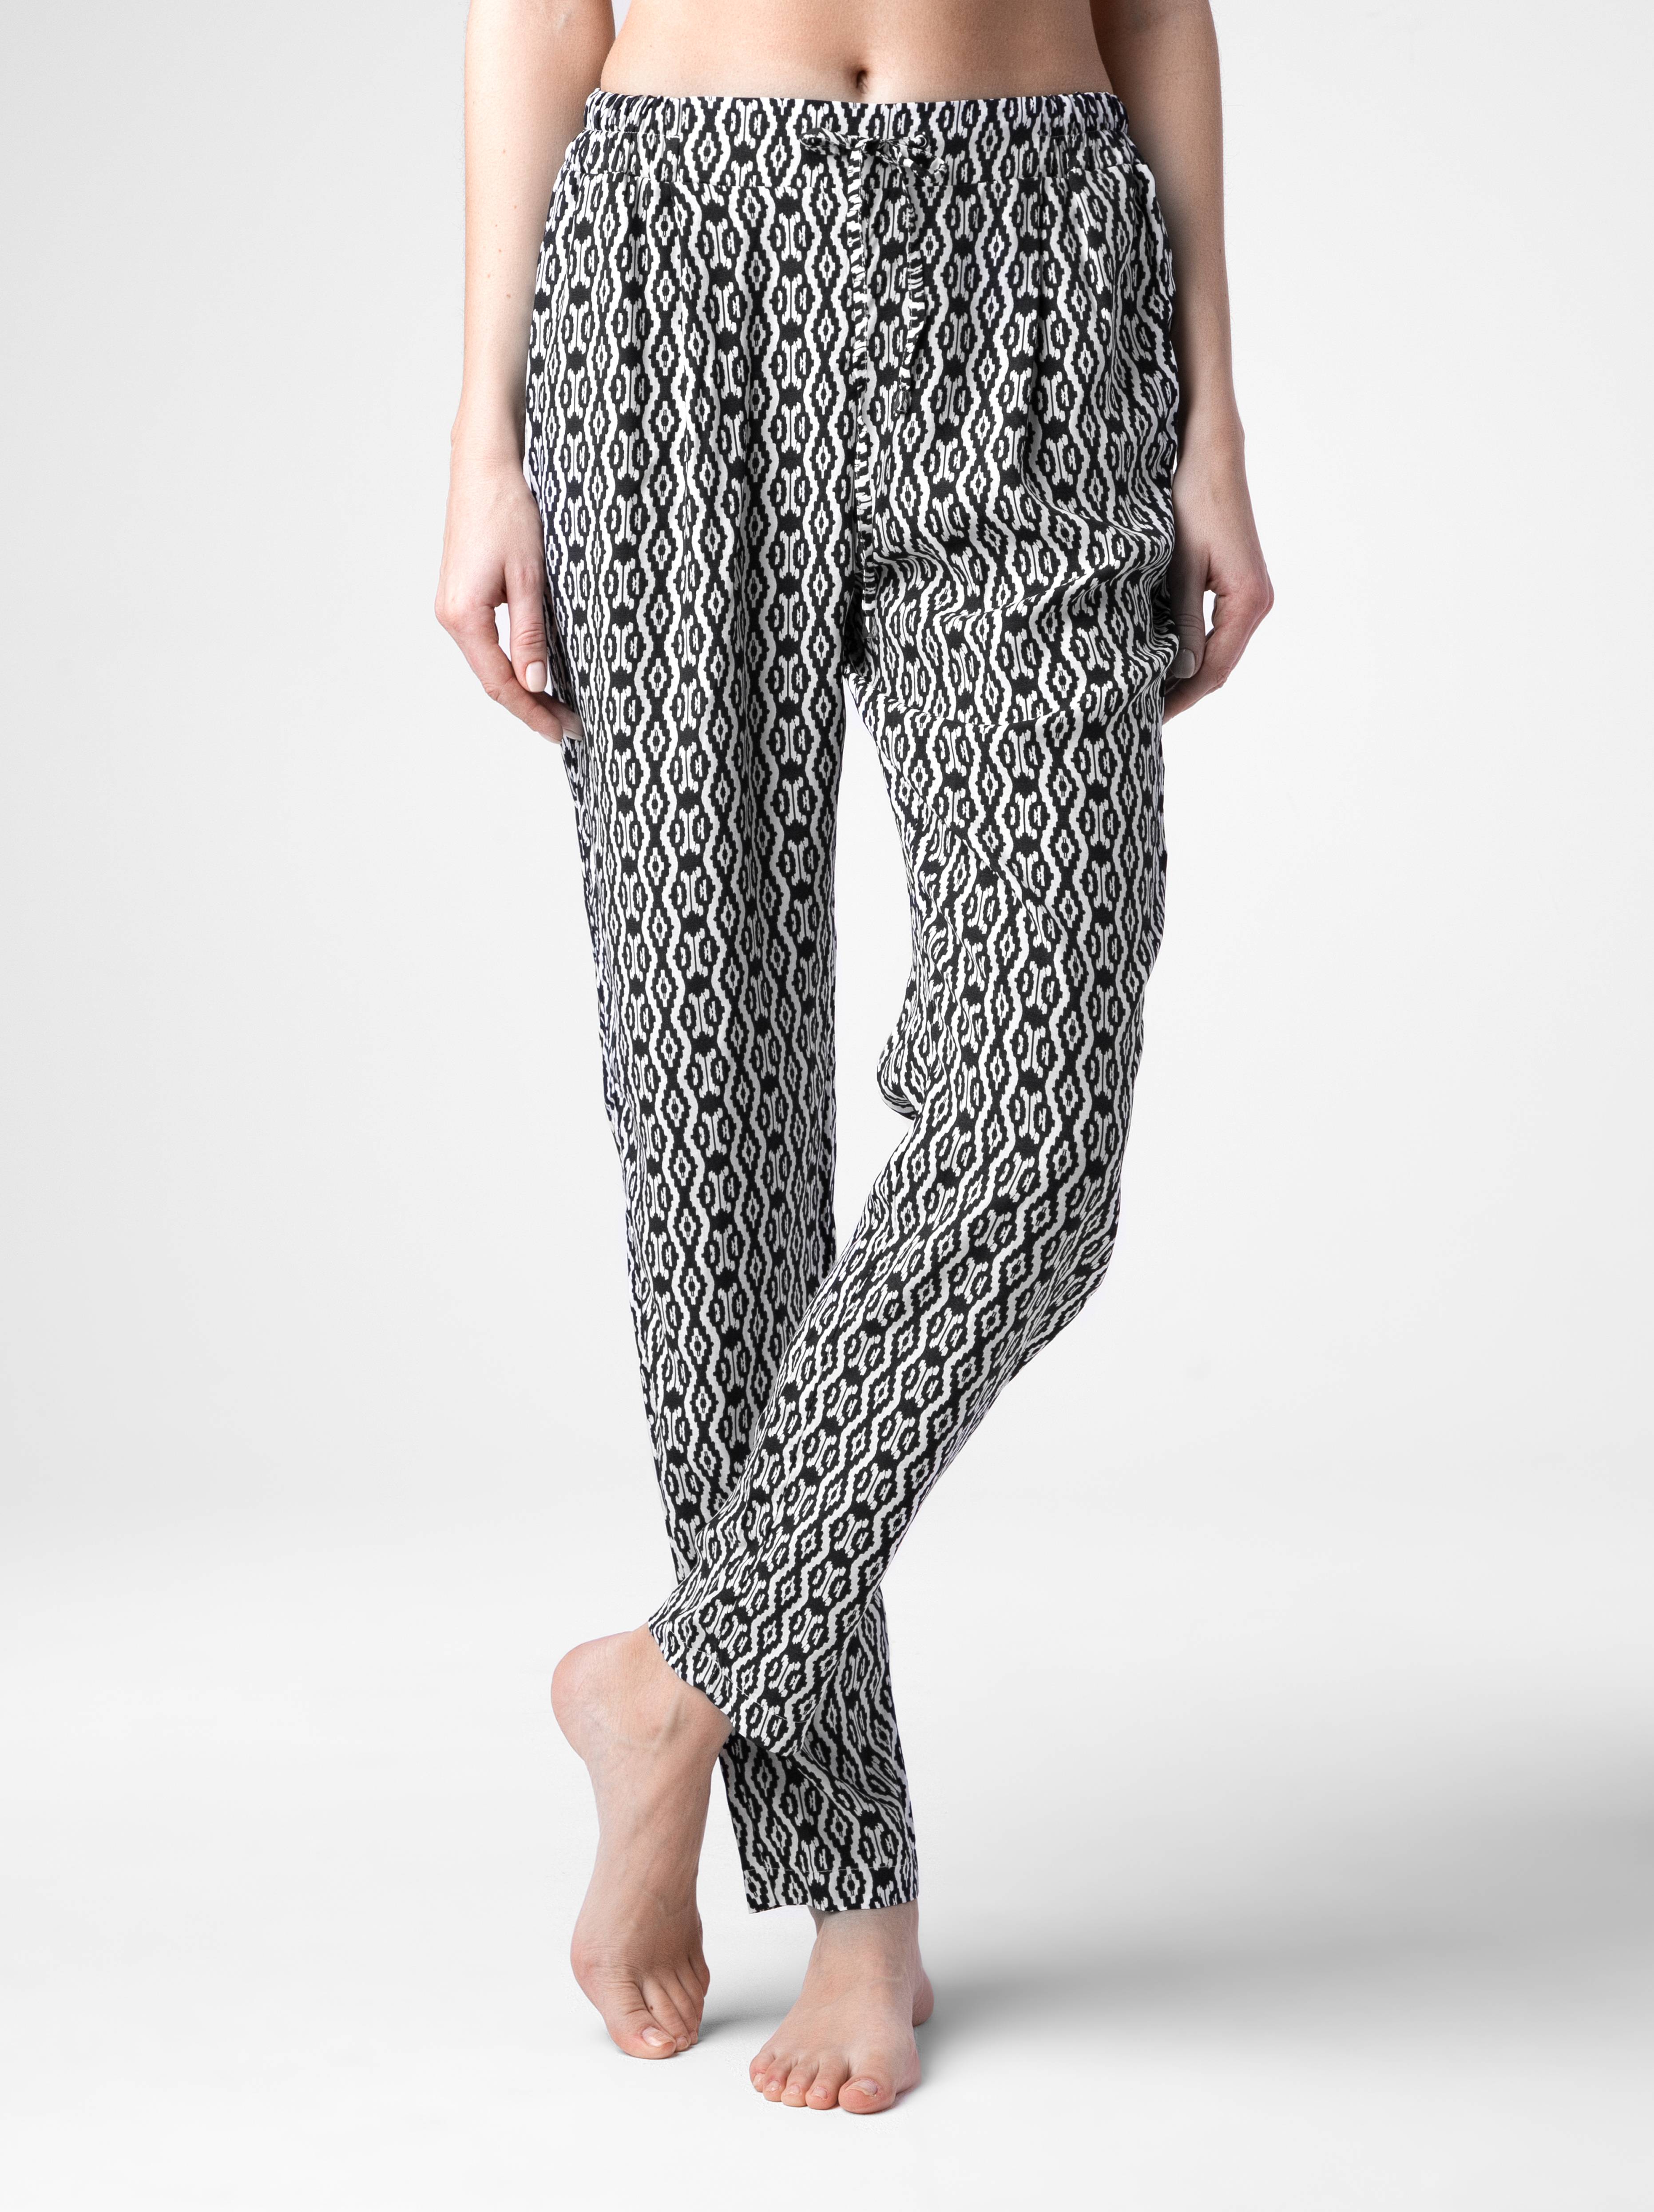 Легкие брюки с монохромным принтом LETICIA Conte ⭐️, цвет black, размер 164-76-104